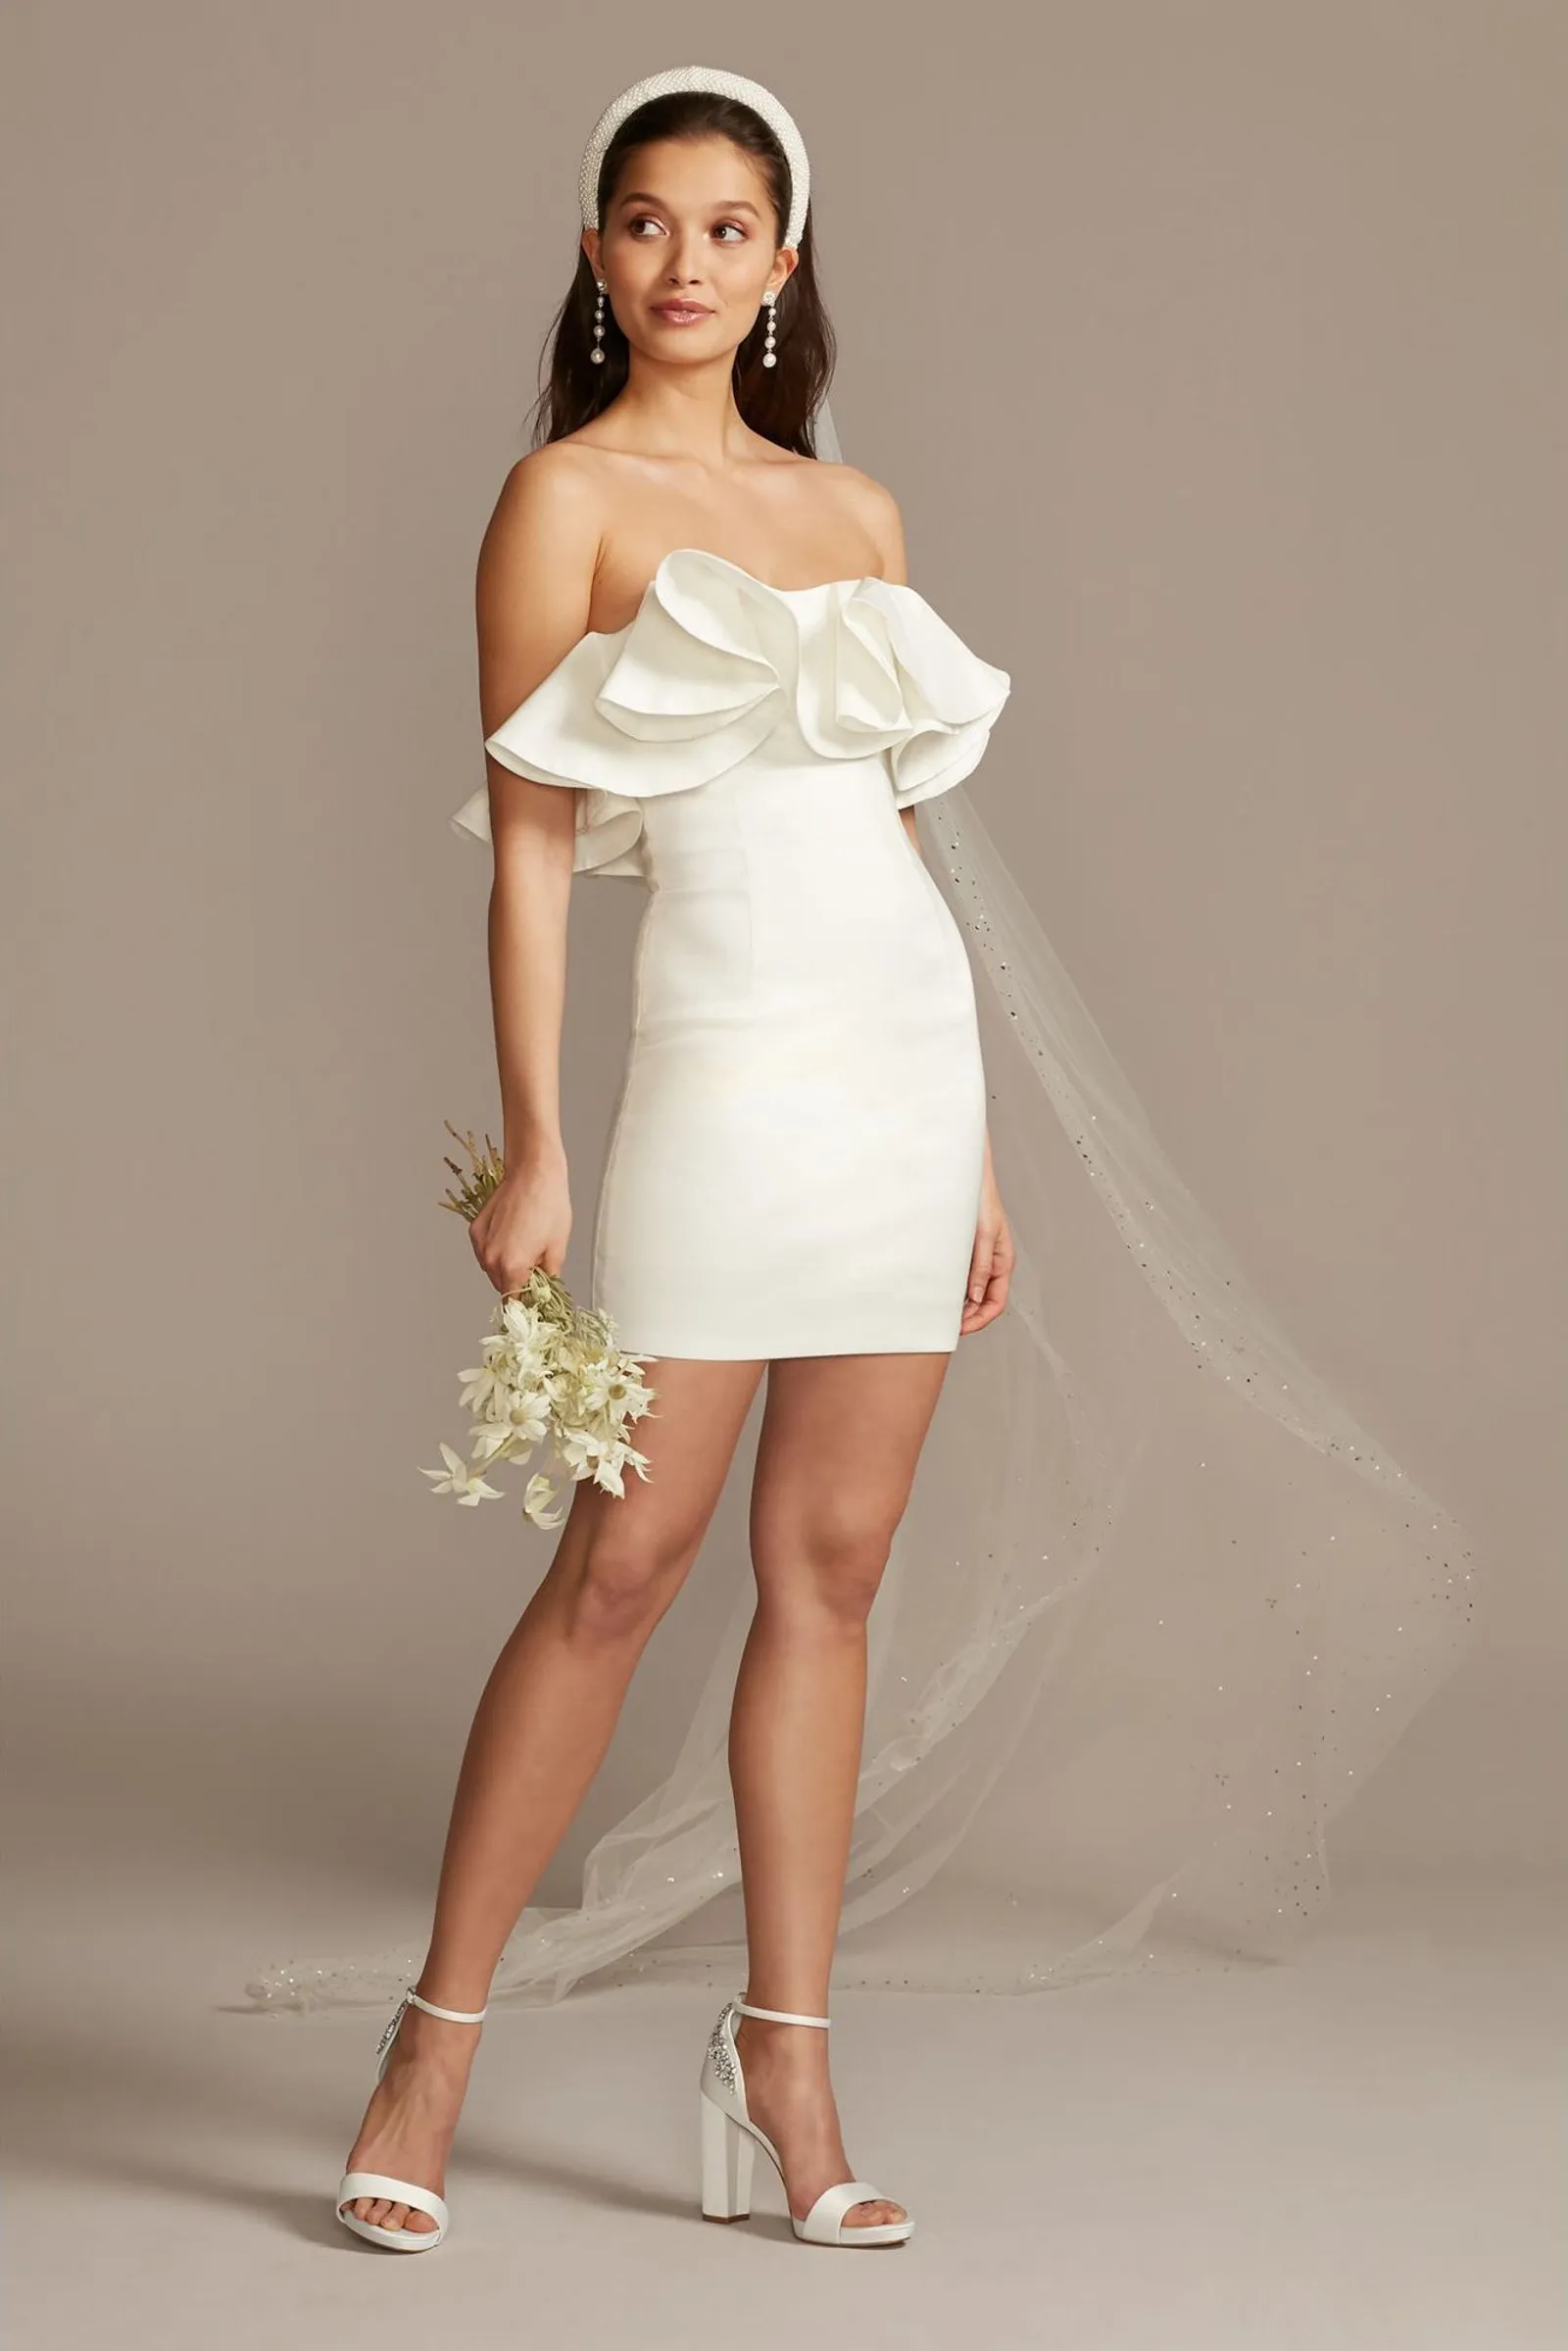 Inspirasi Model Dress Pendek untuk Pernikahan